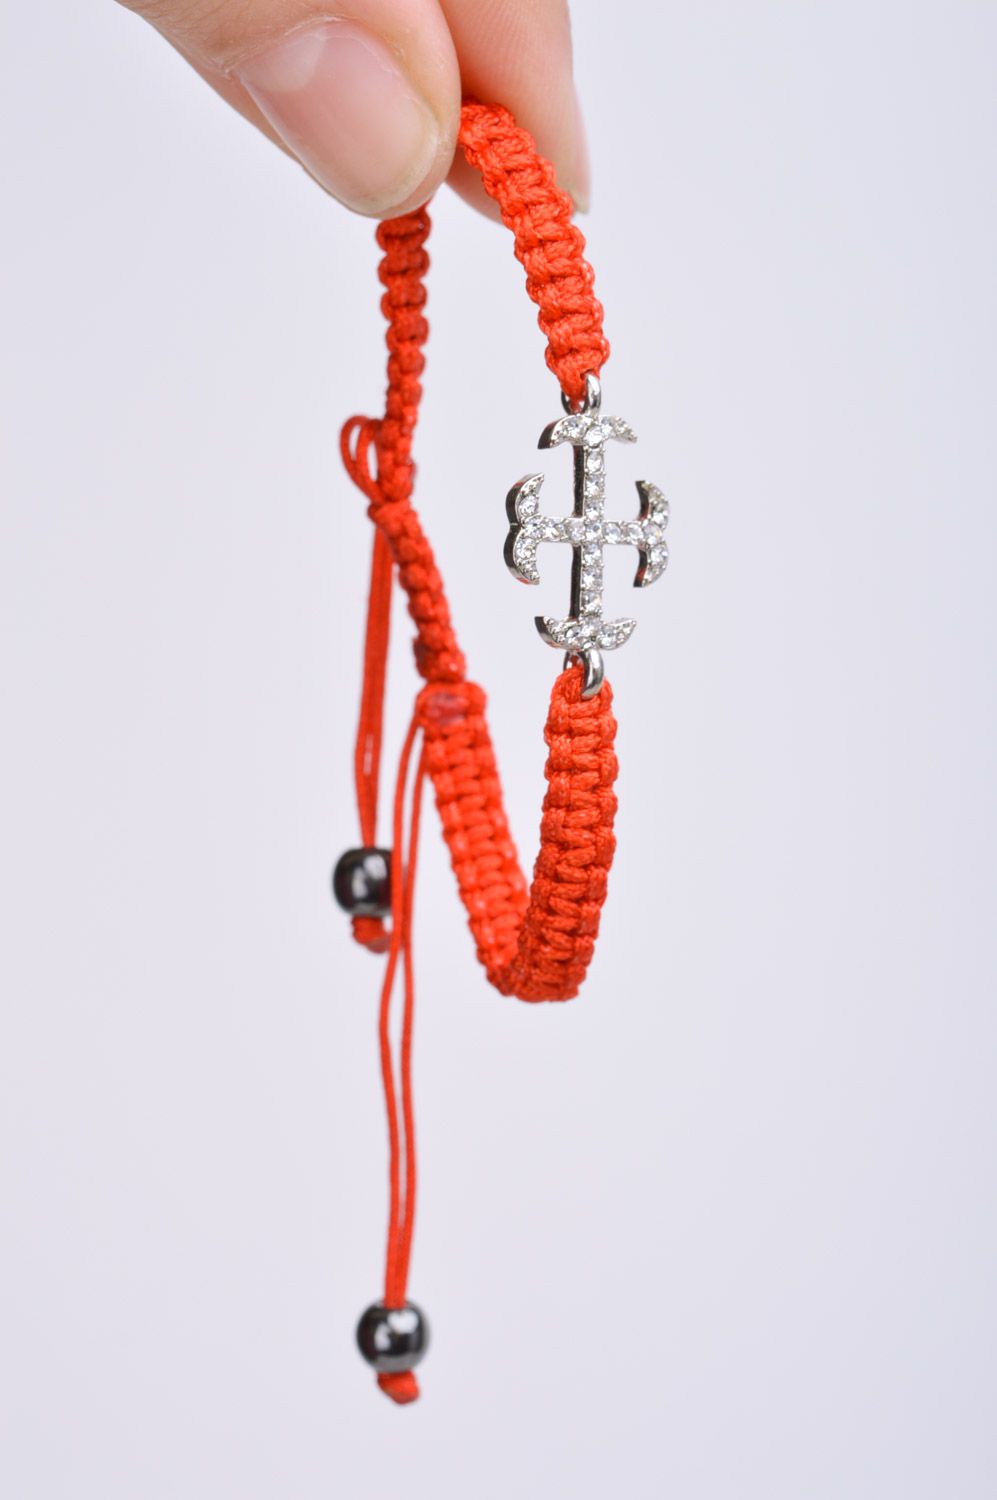 Красный браслет из ниток плетеный вручную с металлической подвеской-крестом фото 3